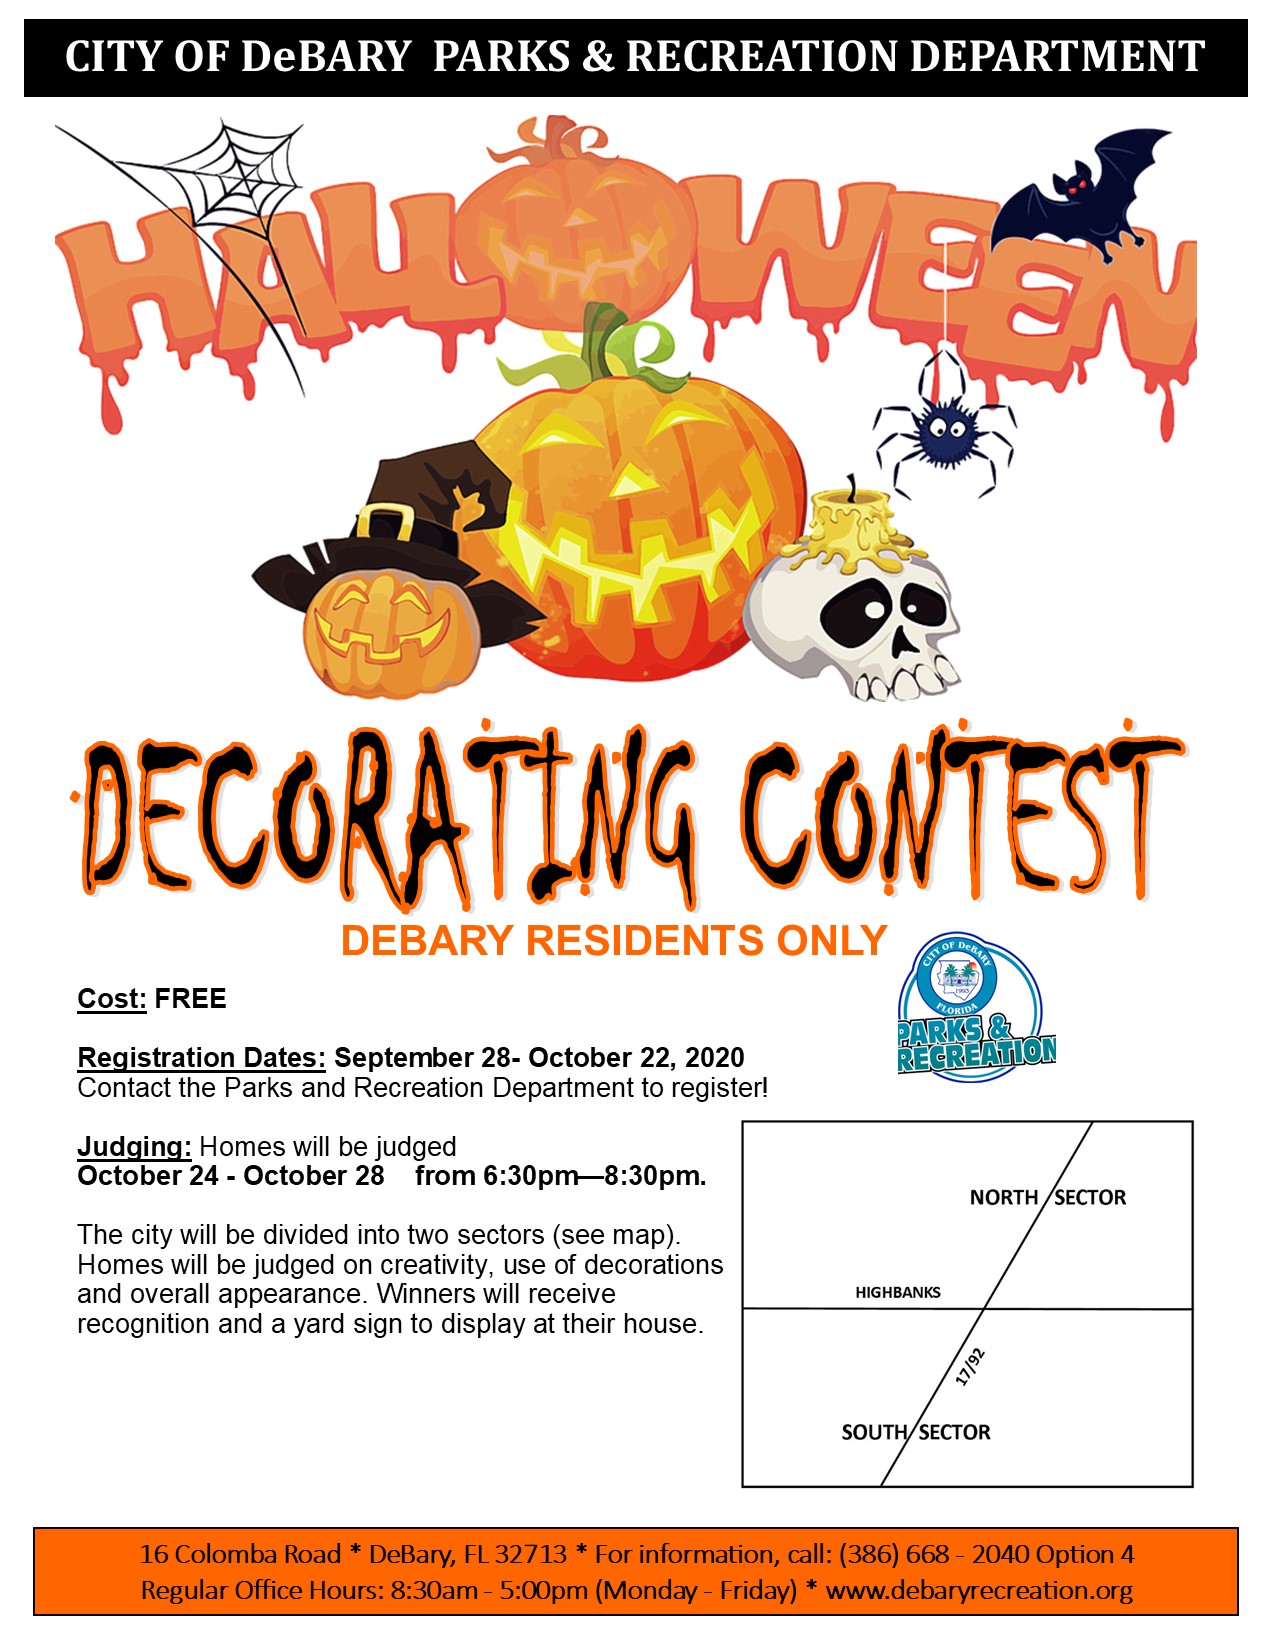 Halloween Contest Flyer 2020 